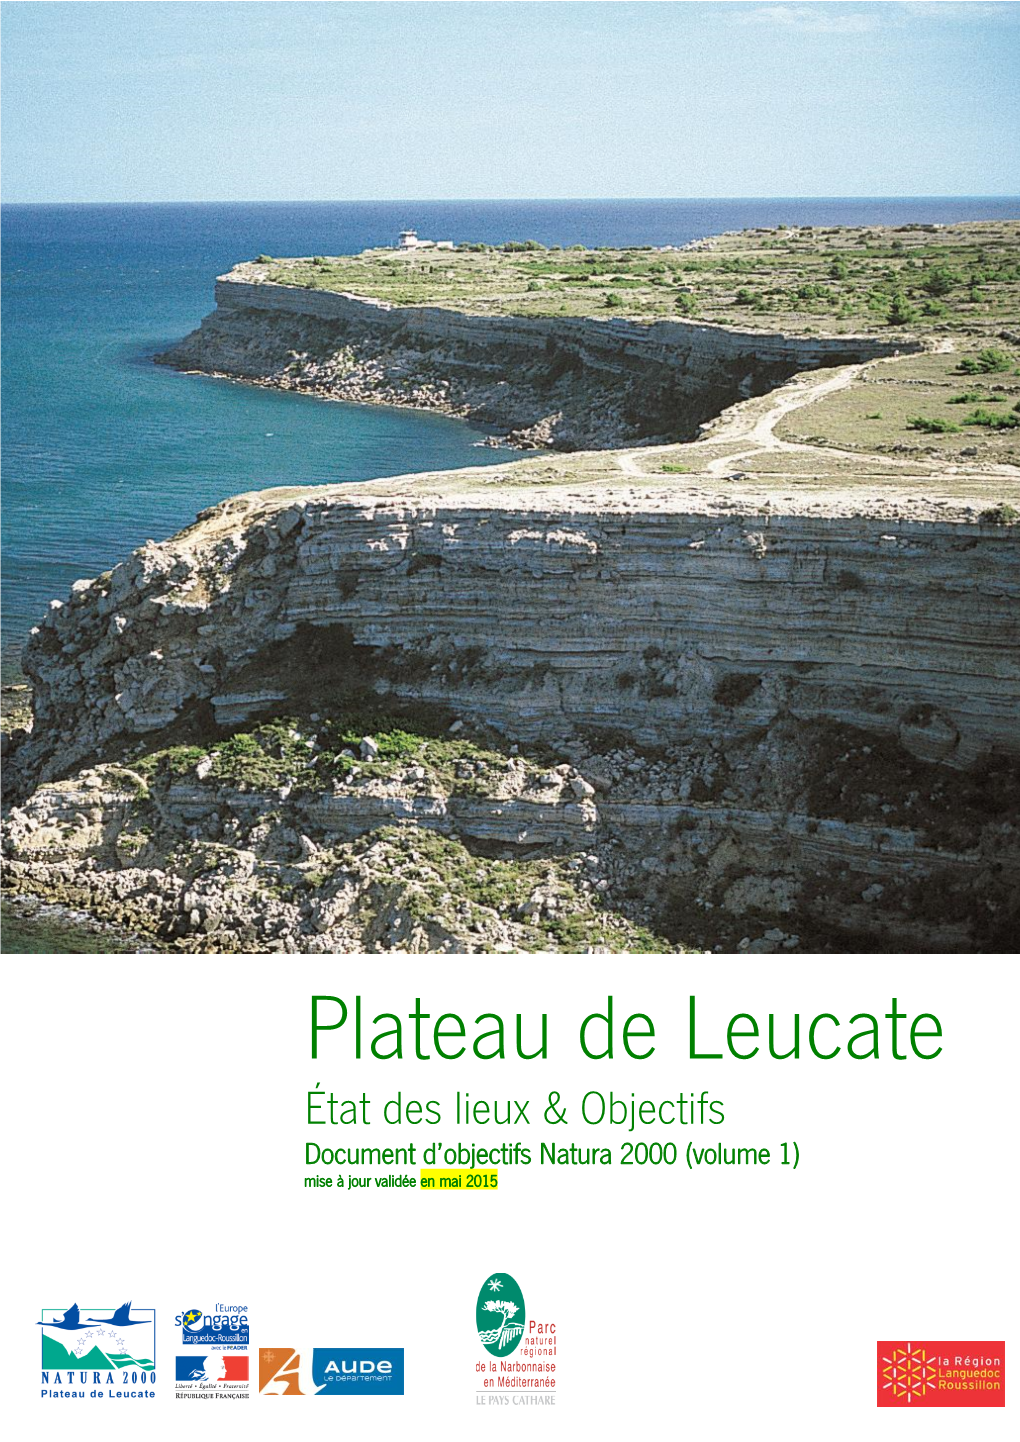 Plateau De Leucate État Des Lieux & Objectifs Document D’Objectifs Natura 2000 (Volume 1) Mise À Jour Validée En Mai 2015